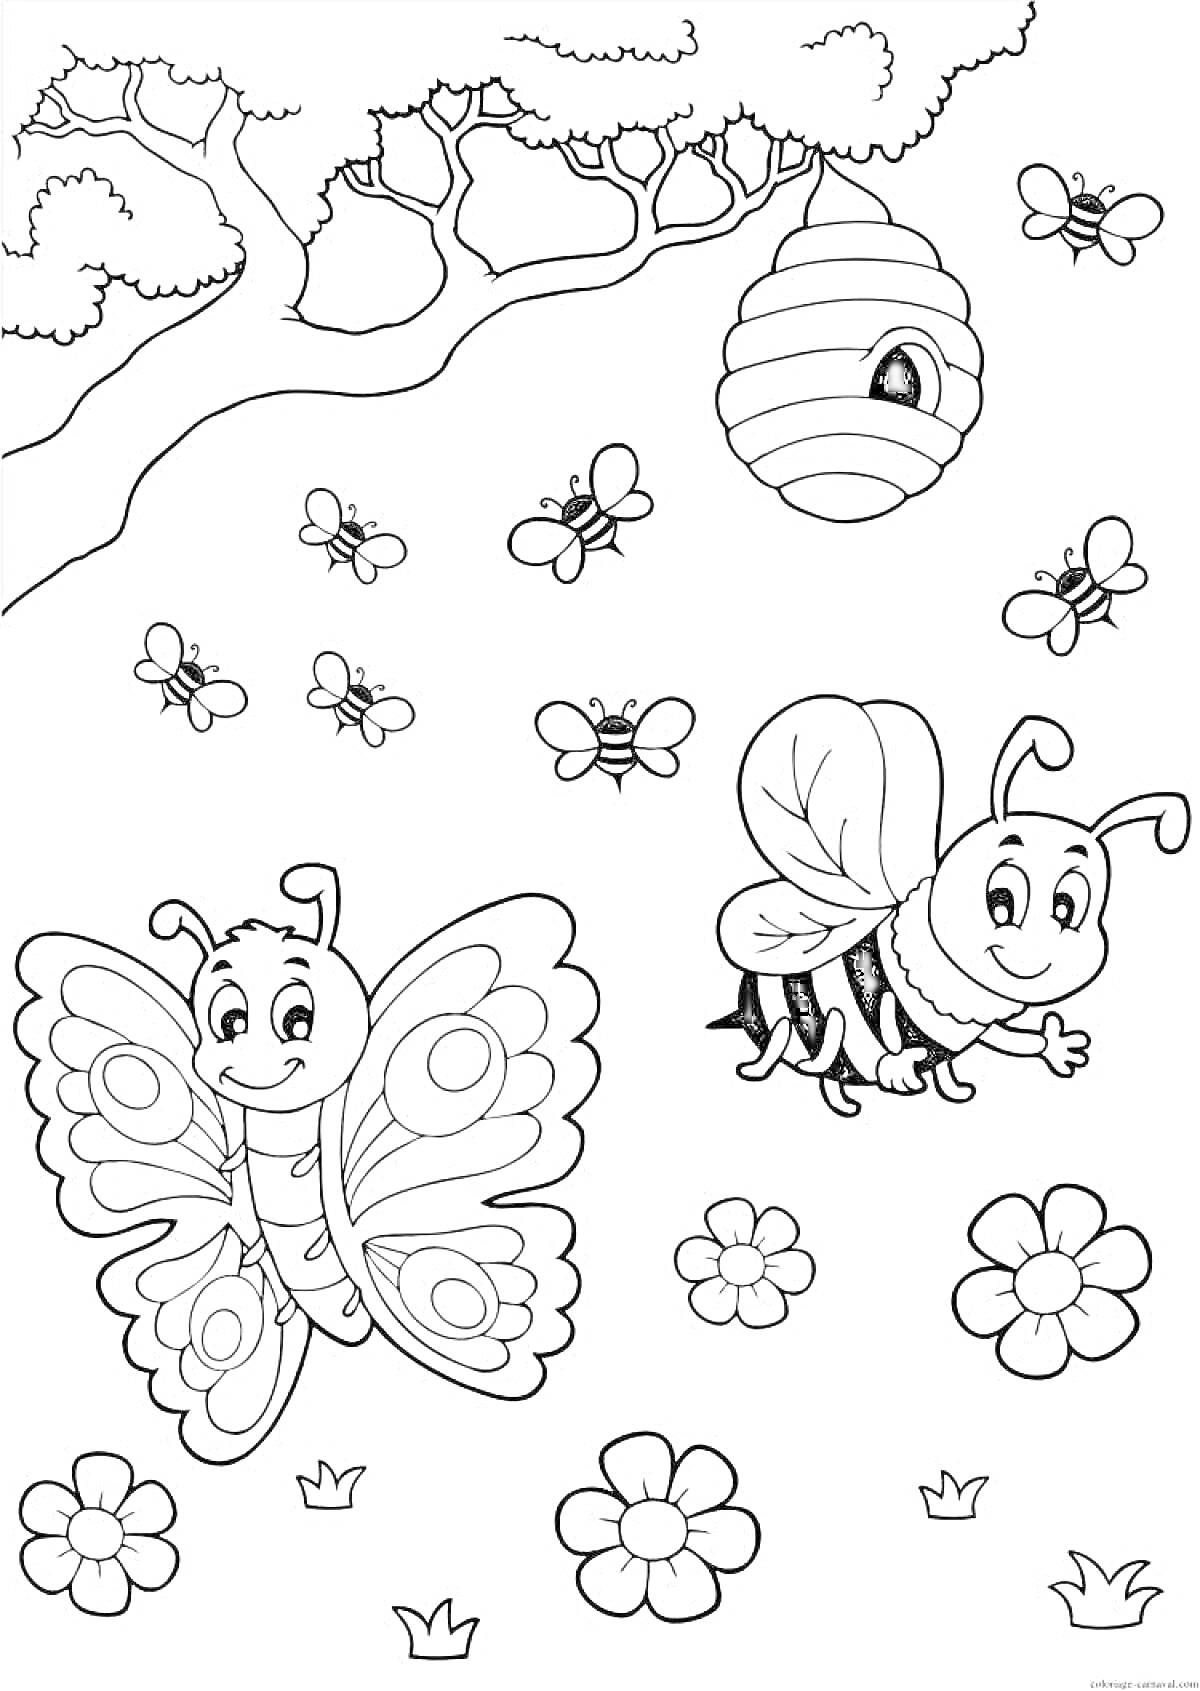 Раскраска бабочка, пчела, улей на дереве, цветы, маленькие пчелы, дерево